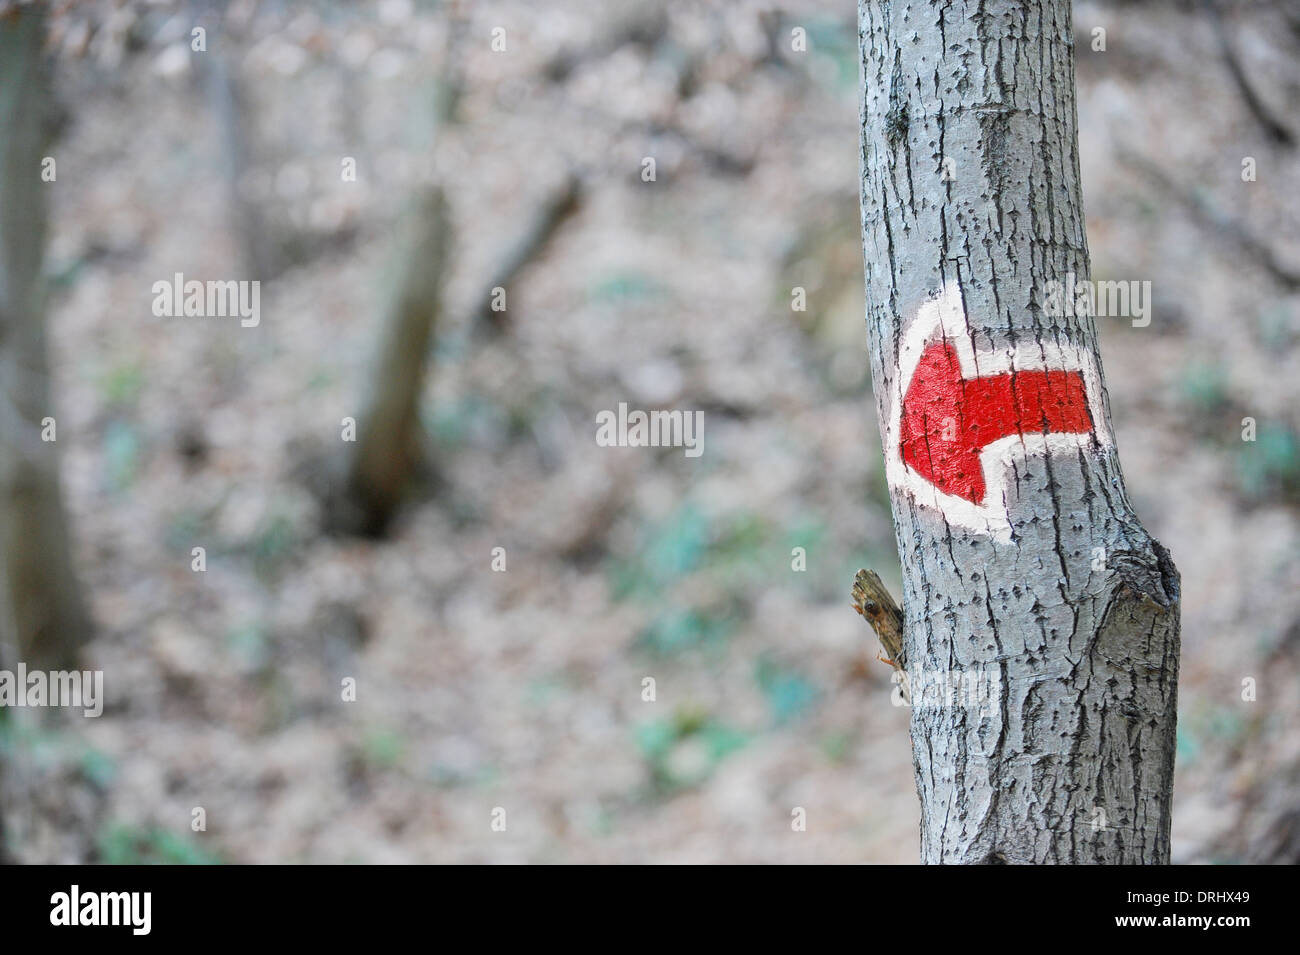 Signo de flecha roja sobre un árbol, marcando una ruta turística de senderismo Foto de stock